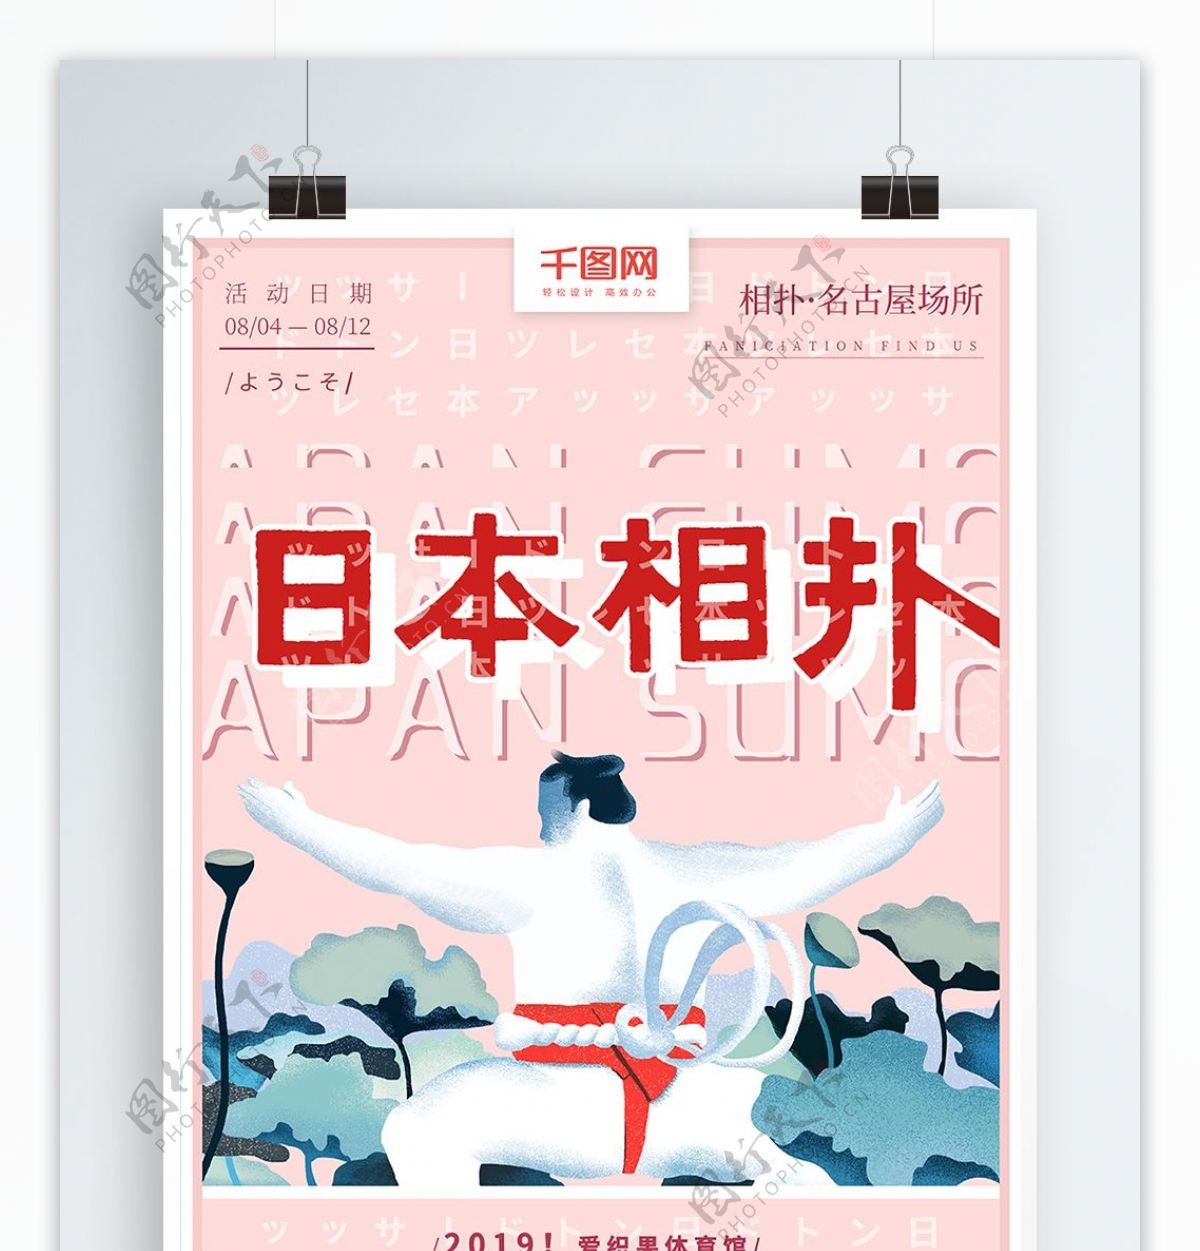 原创手绘日本旅游文化相扑宣传海报